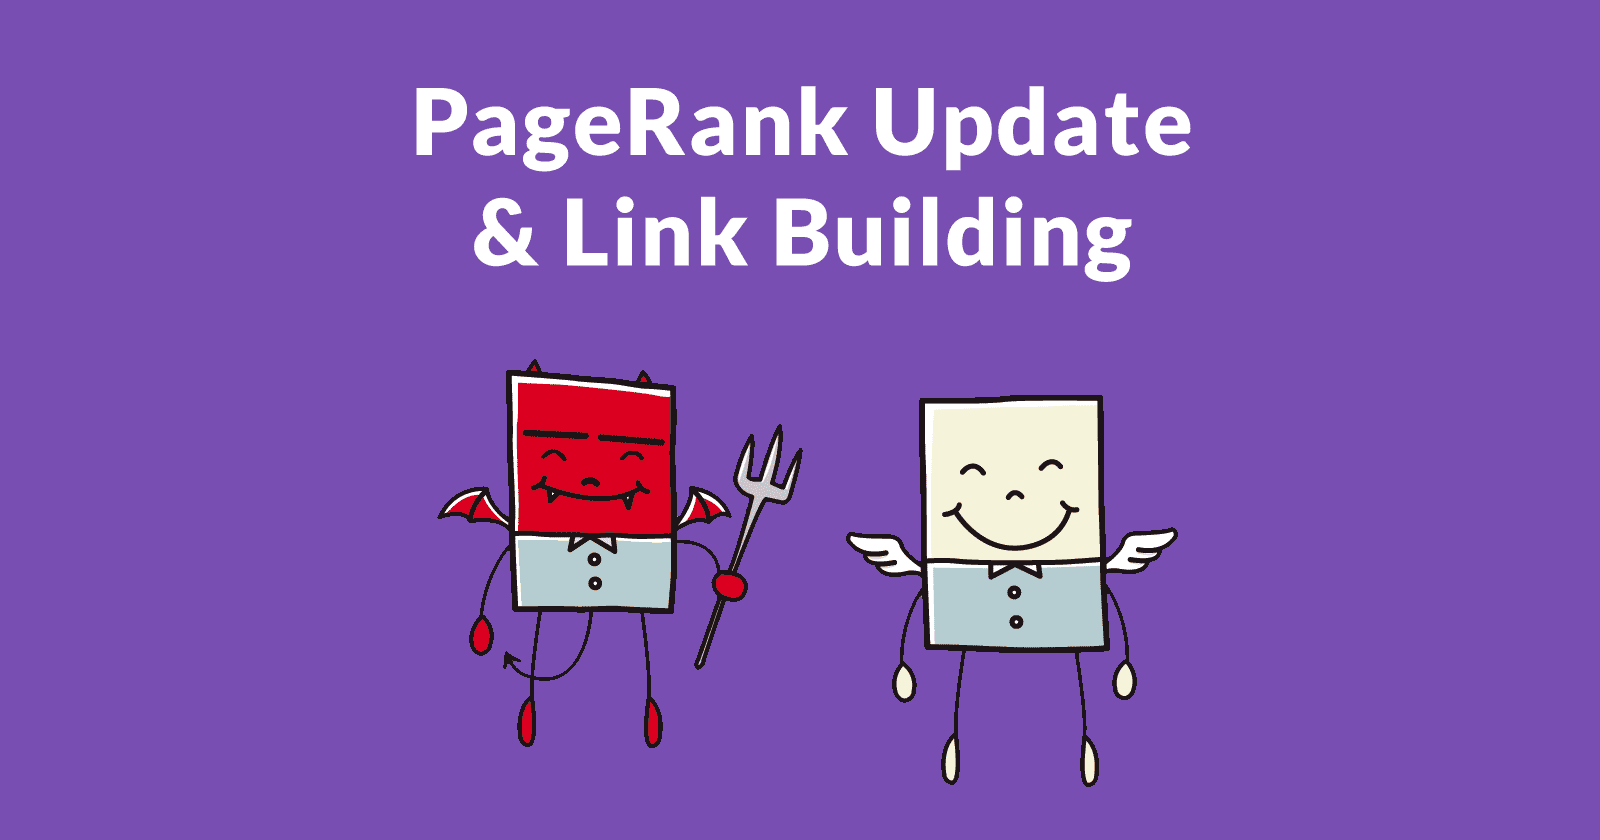 Comment augmenter le PageRank d'un site ?